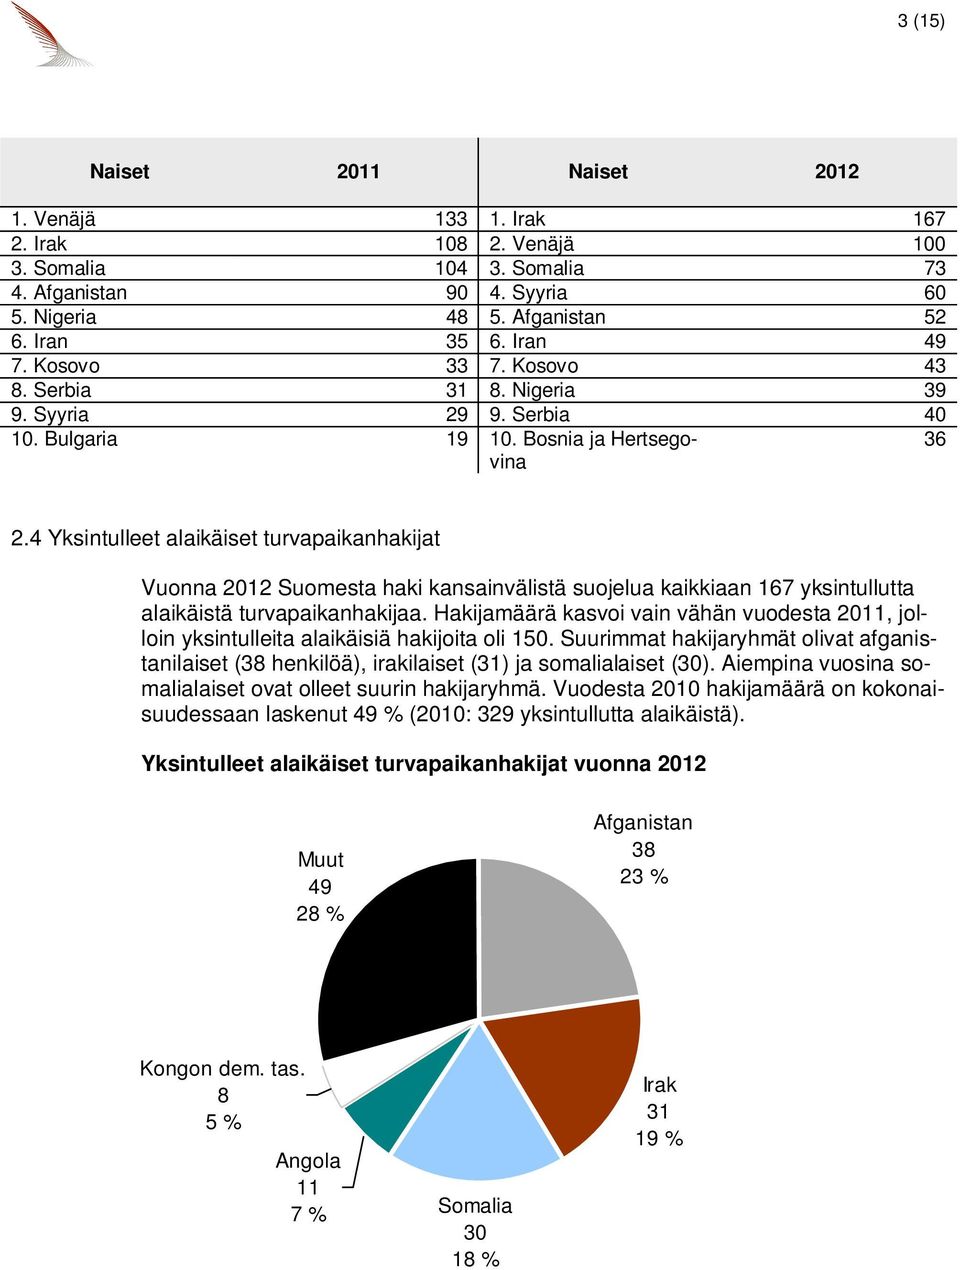 4 Yksintulleet alaikäiset turvapaikanhakijat Vuonna 2012 Suomesta haki kansainvälistä a kaikkiaan 167 yksintullutta alaikäistä turvapaikanhakijaa.